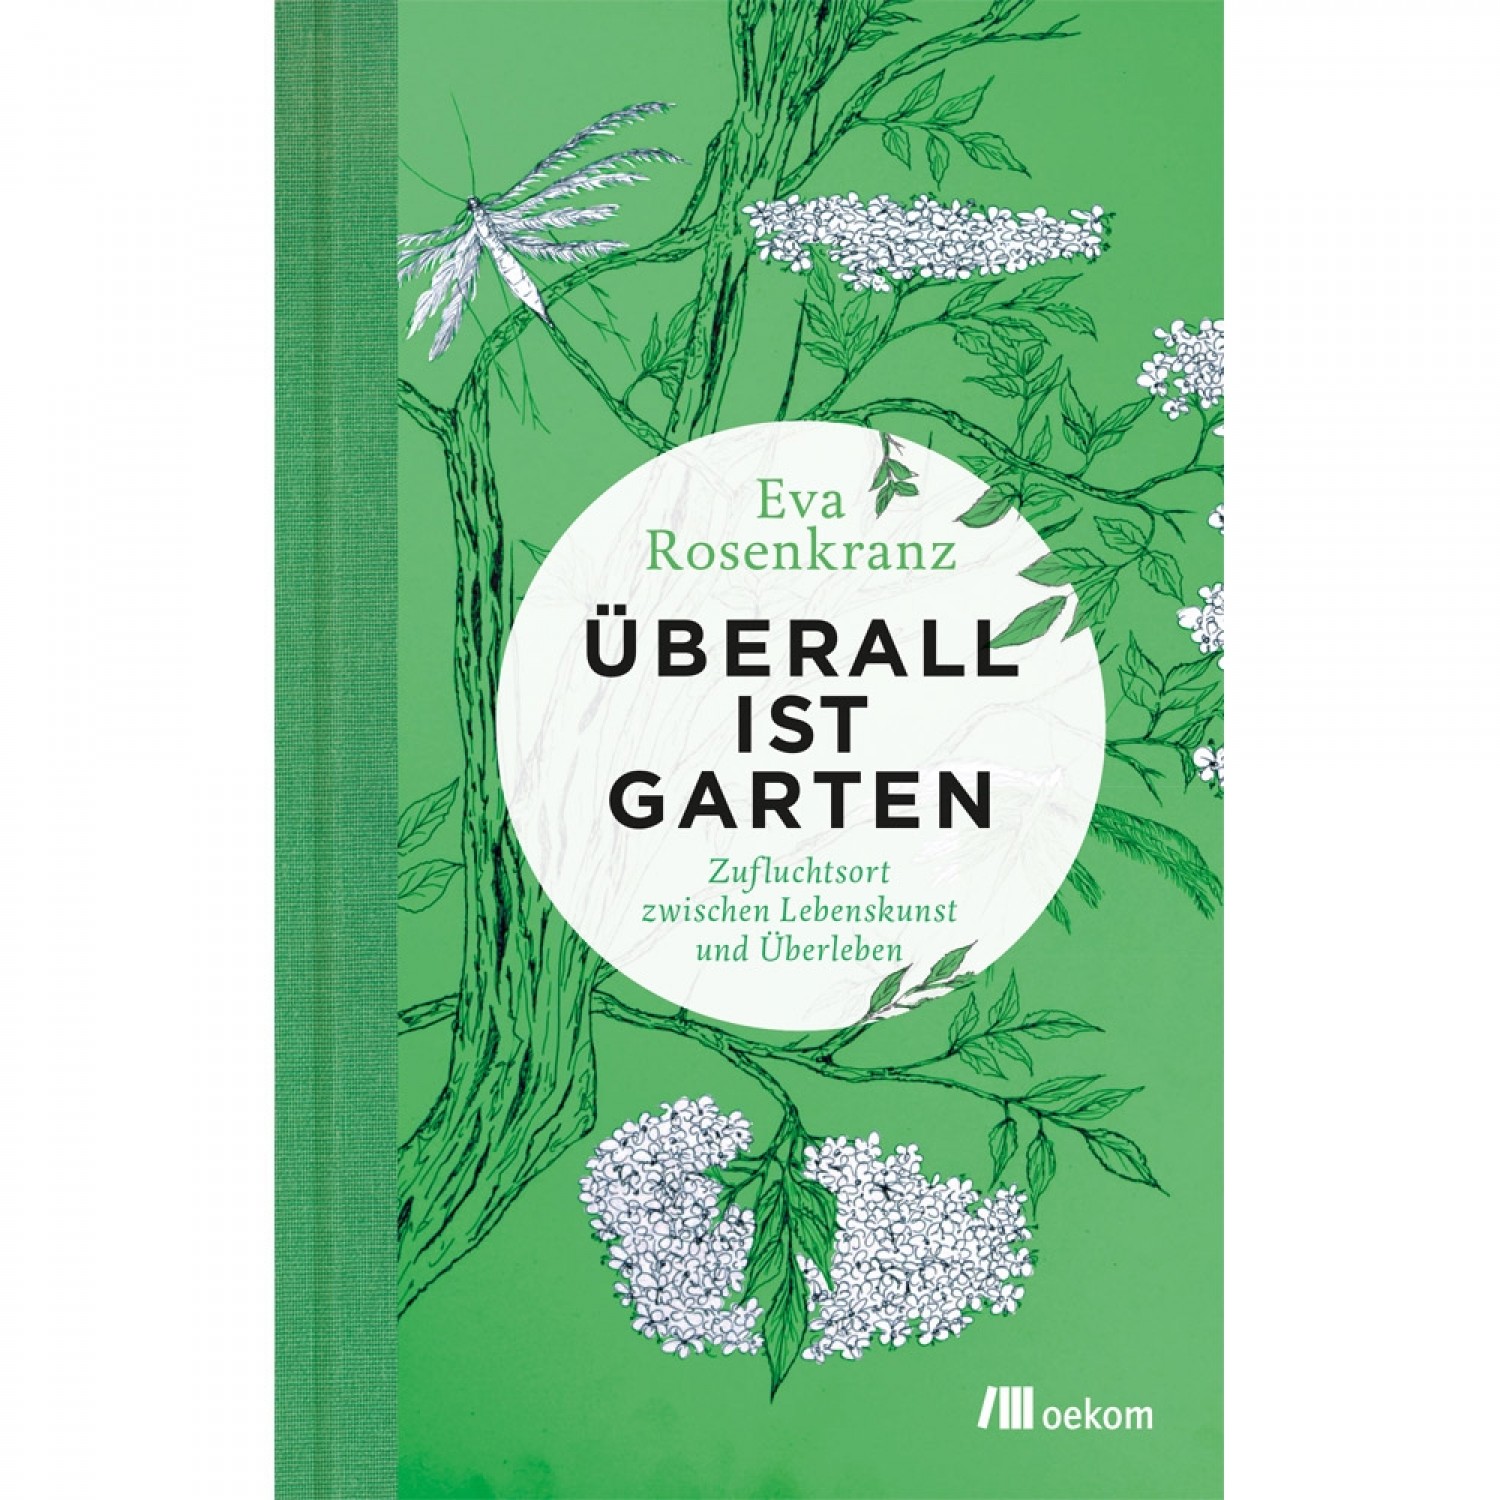 Ueberall ist Garten - Eva Rosenkranz | oekom publisher